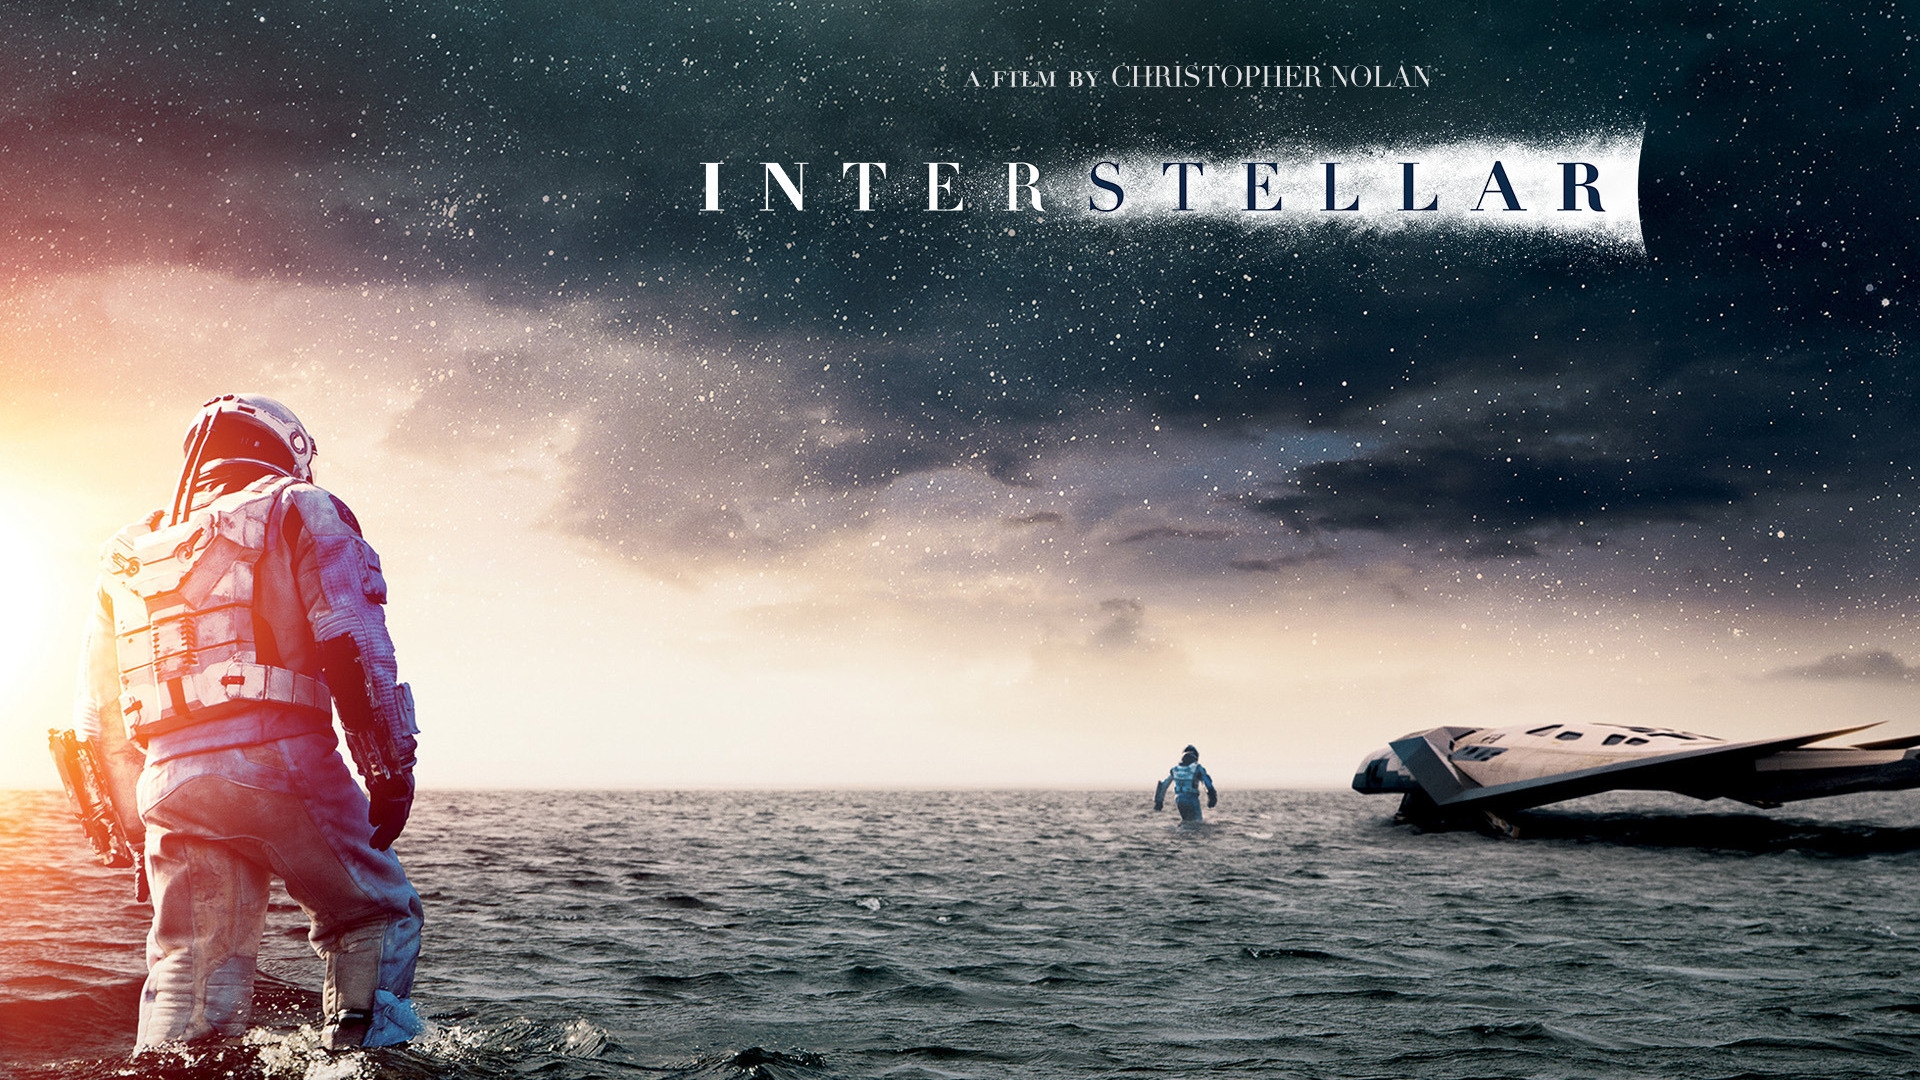 Interstellar 2014 Movie for 1920 x 1080 HDTV 1080p resolution